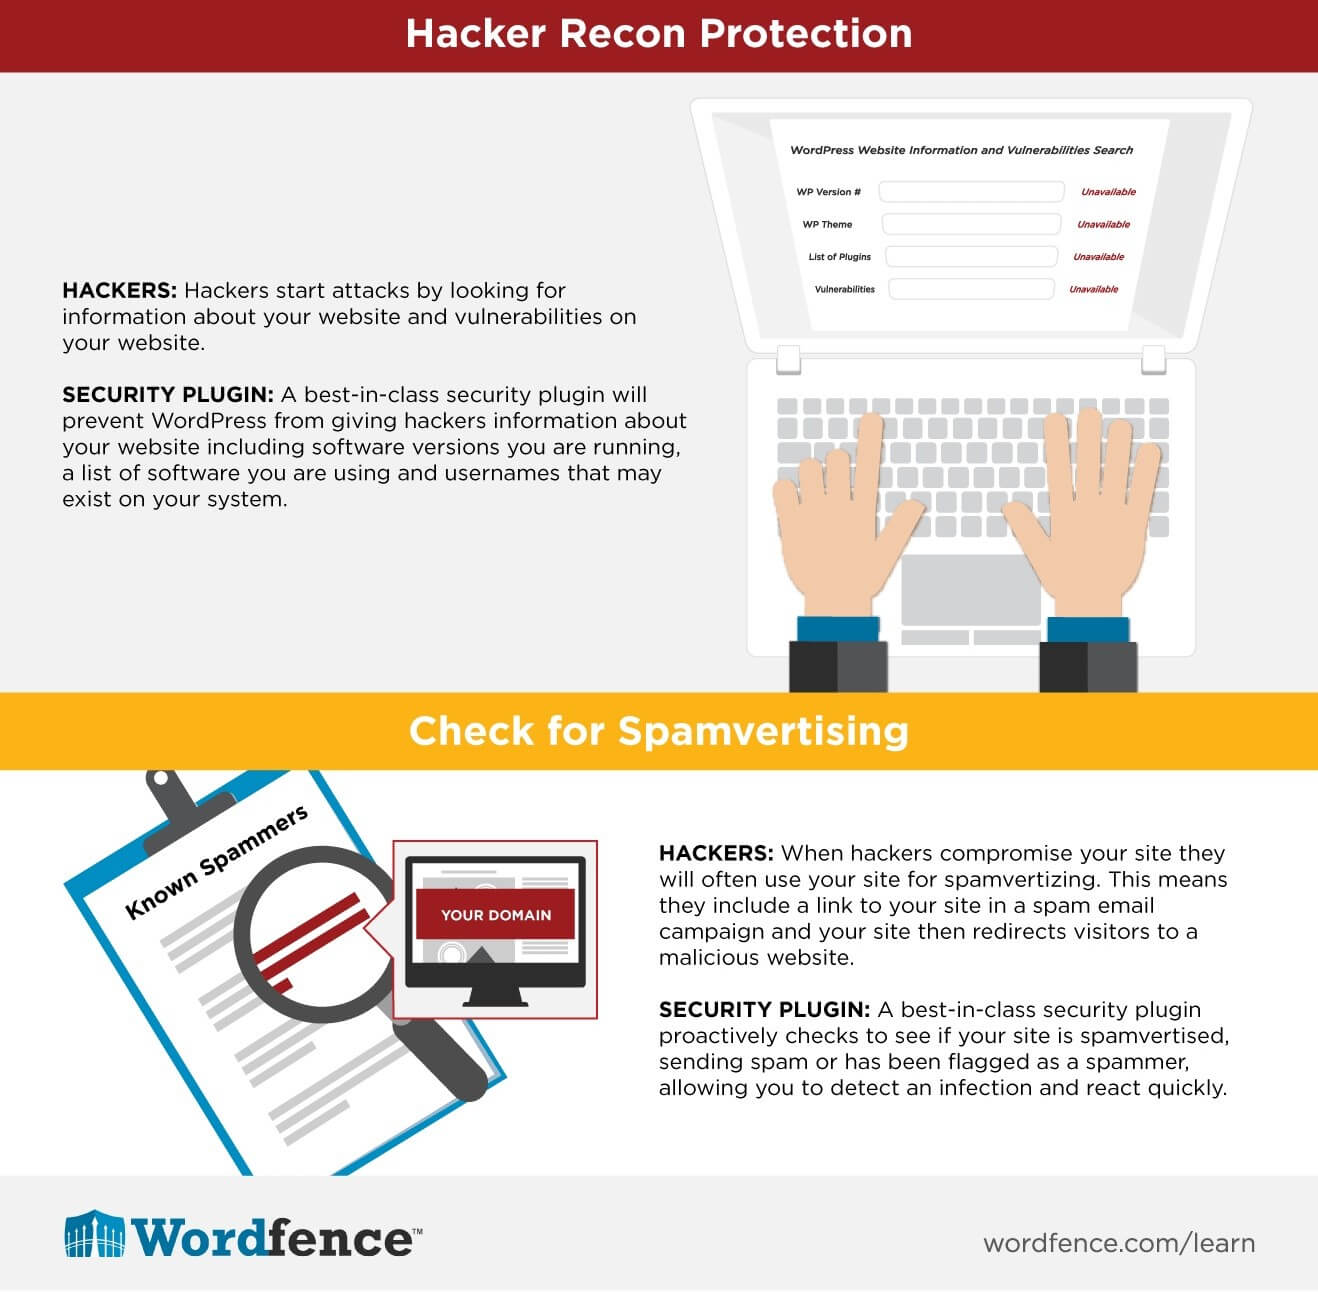 Hacker Recon Protection